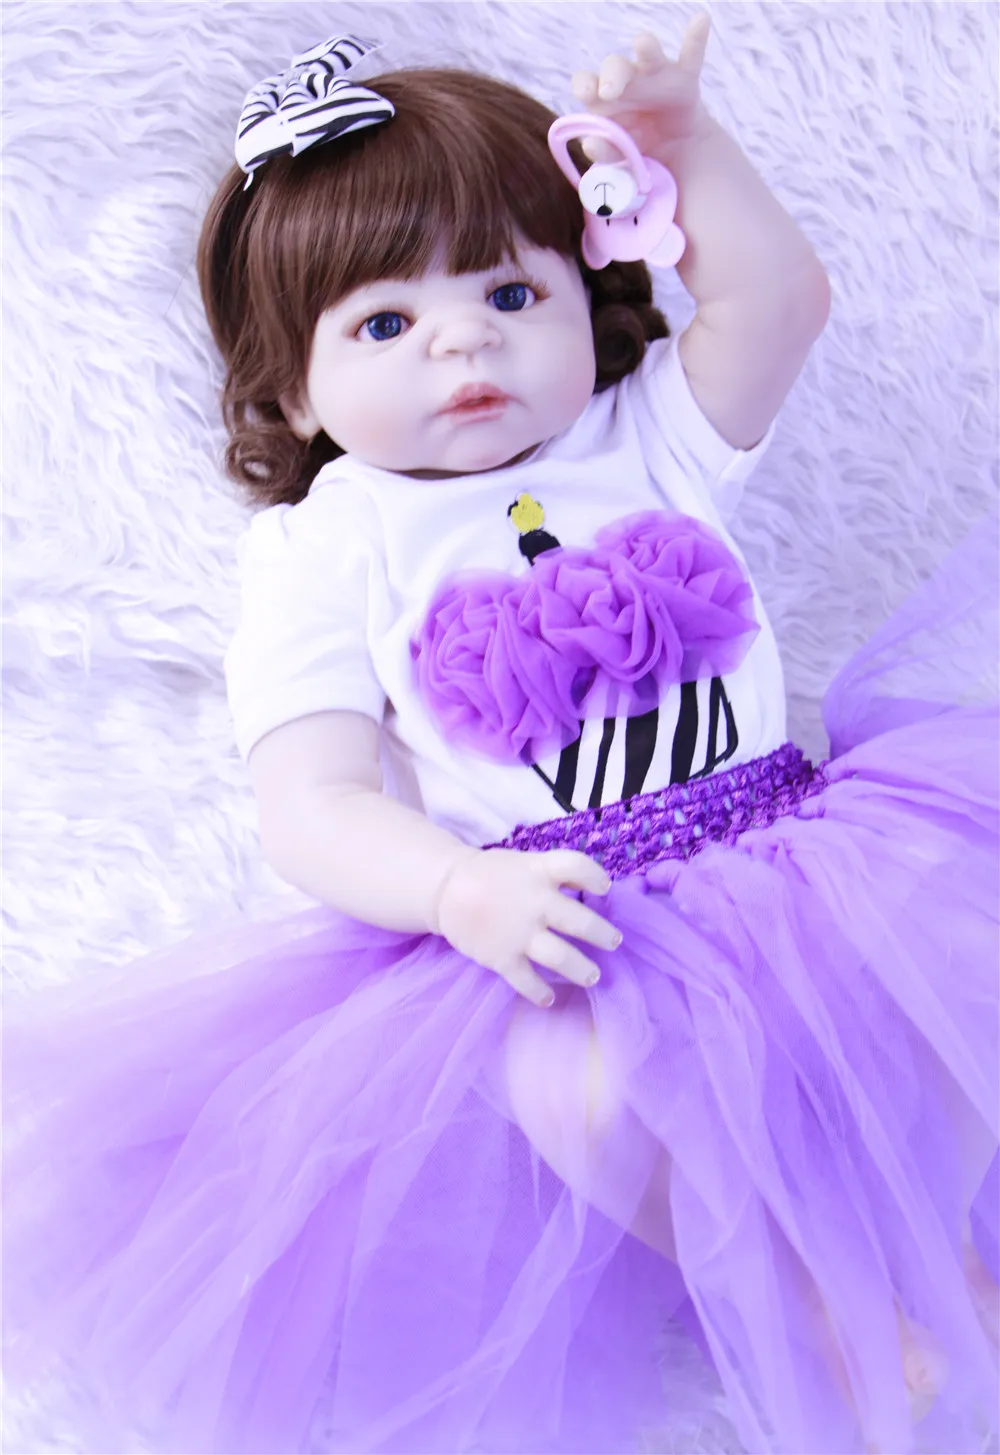 

Кукла реборн силиконовая виниловая, Реалистичная кукла принцесса 55 см для новорожденных, подарок на день рождения, для девочек, игровой дом...